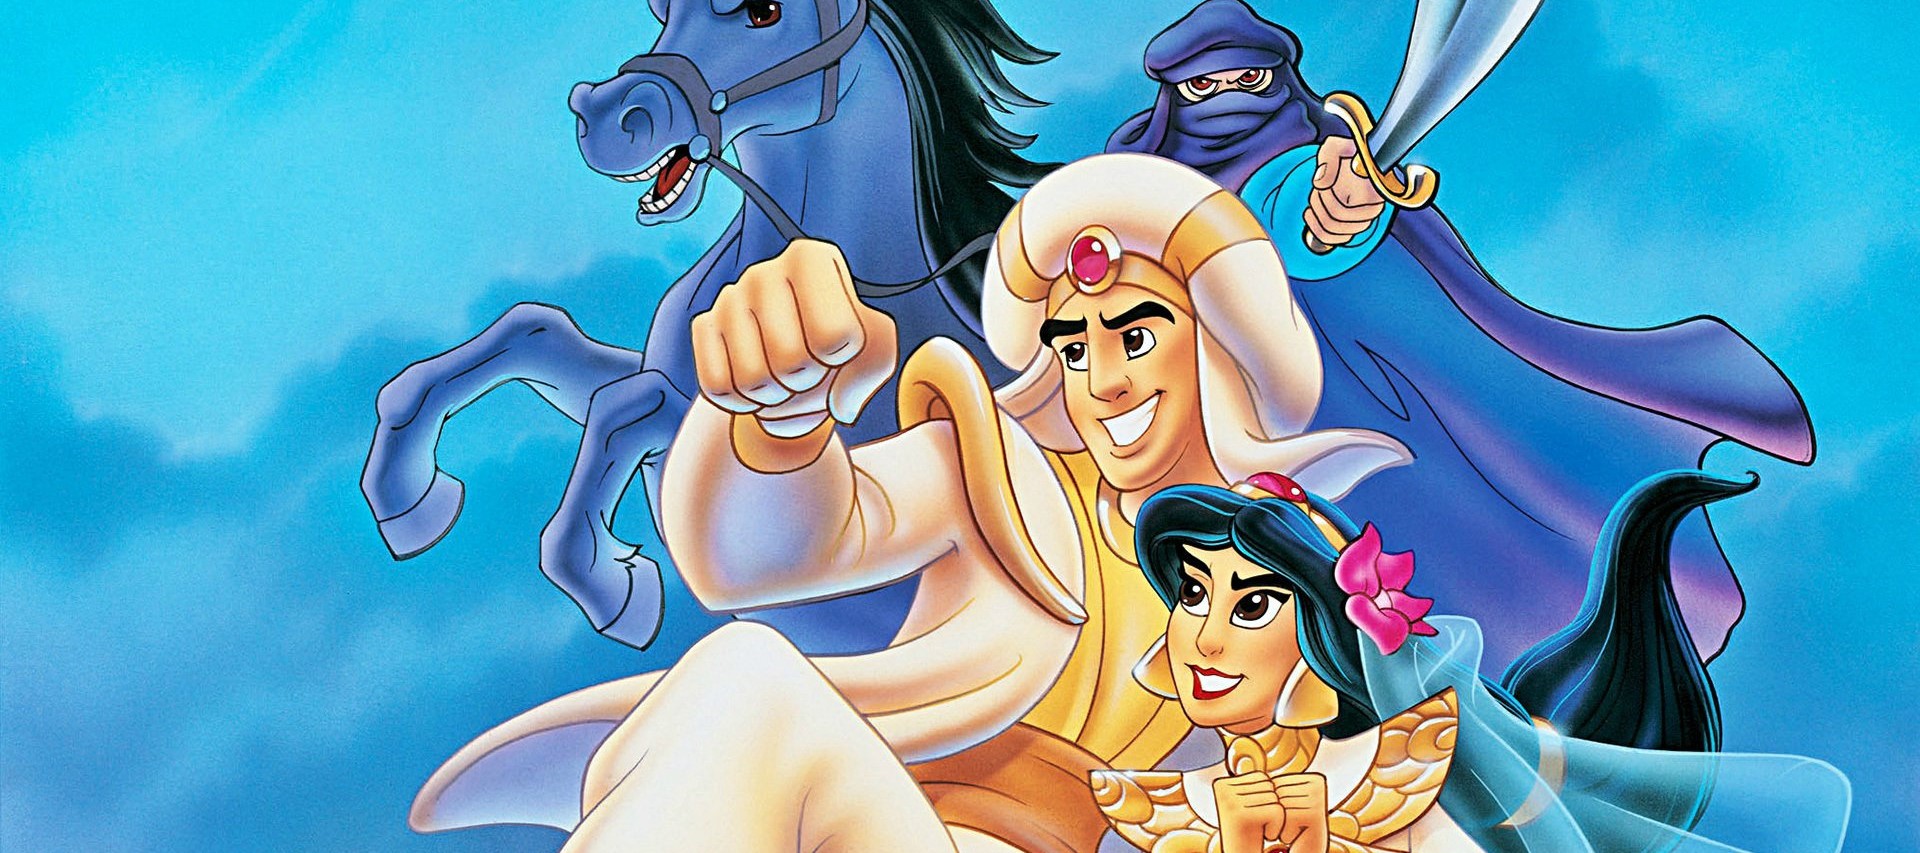 Порно Комиксы На Русском Аладин